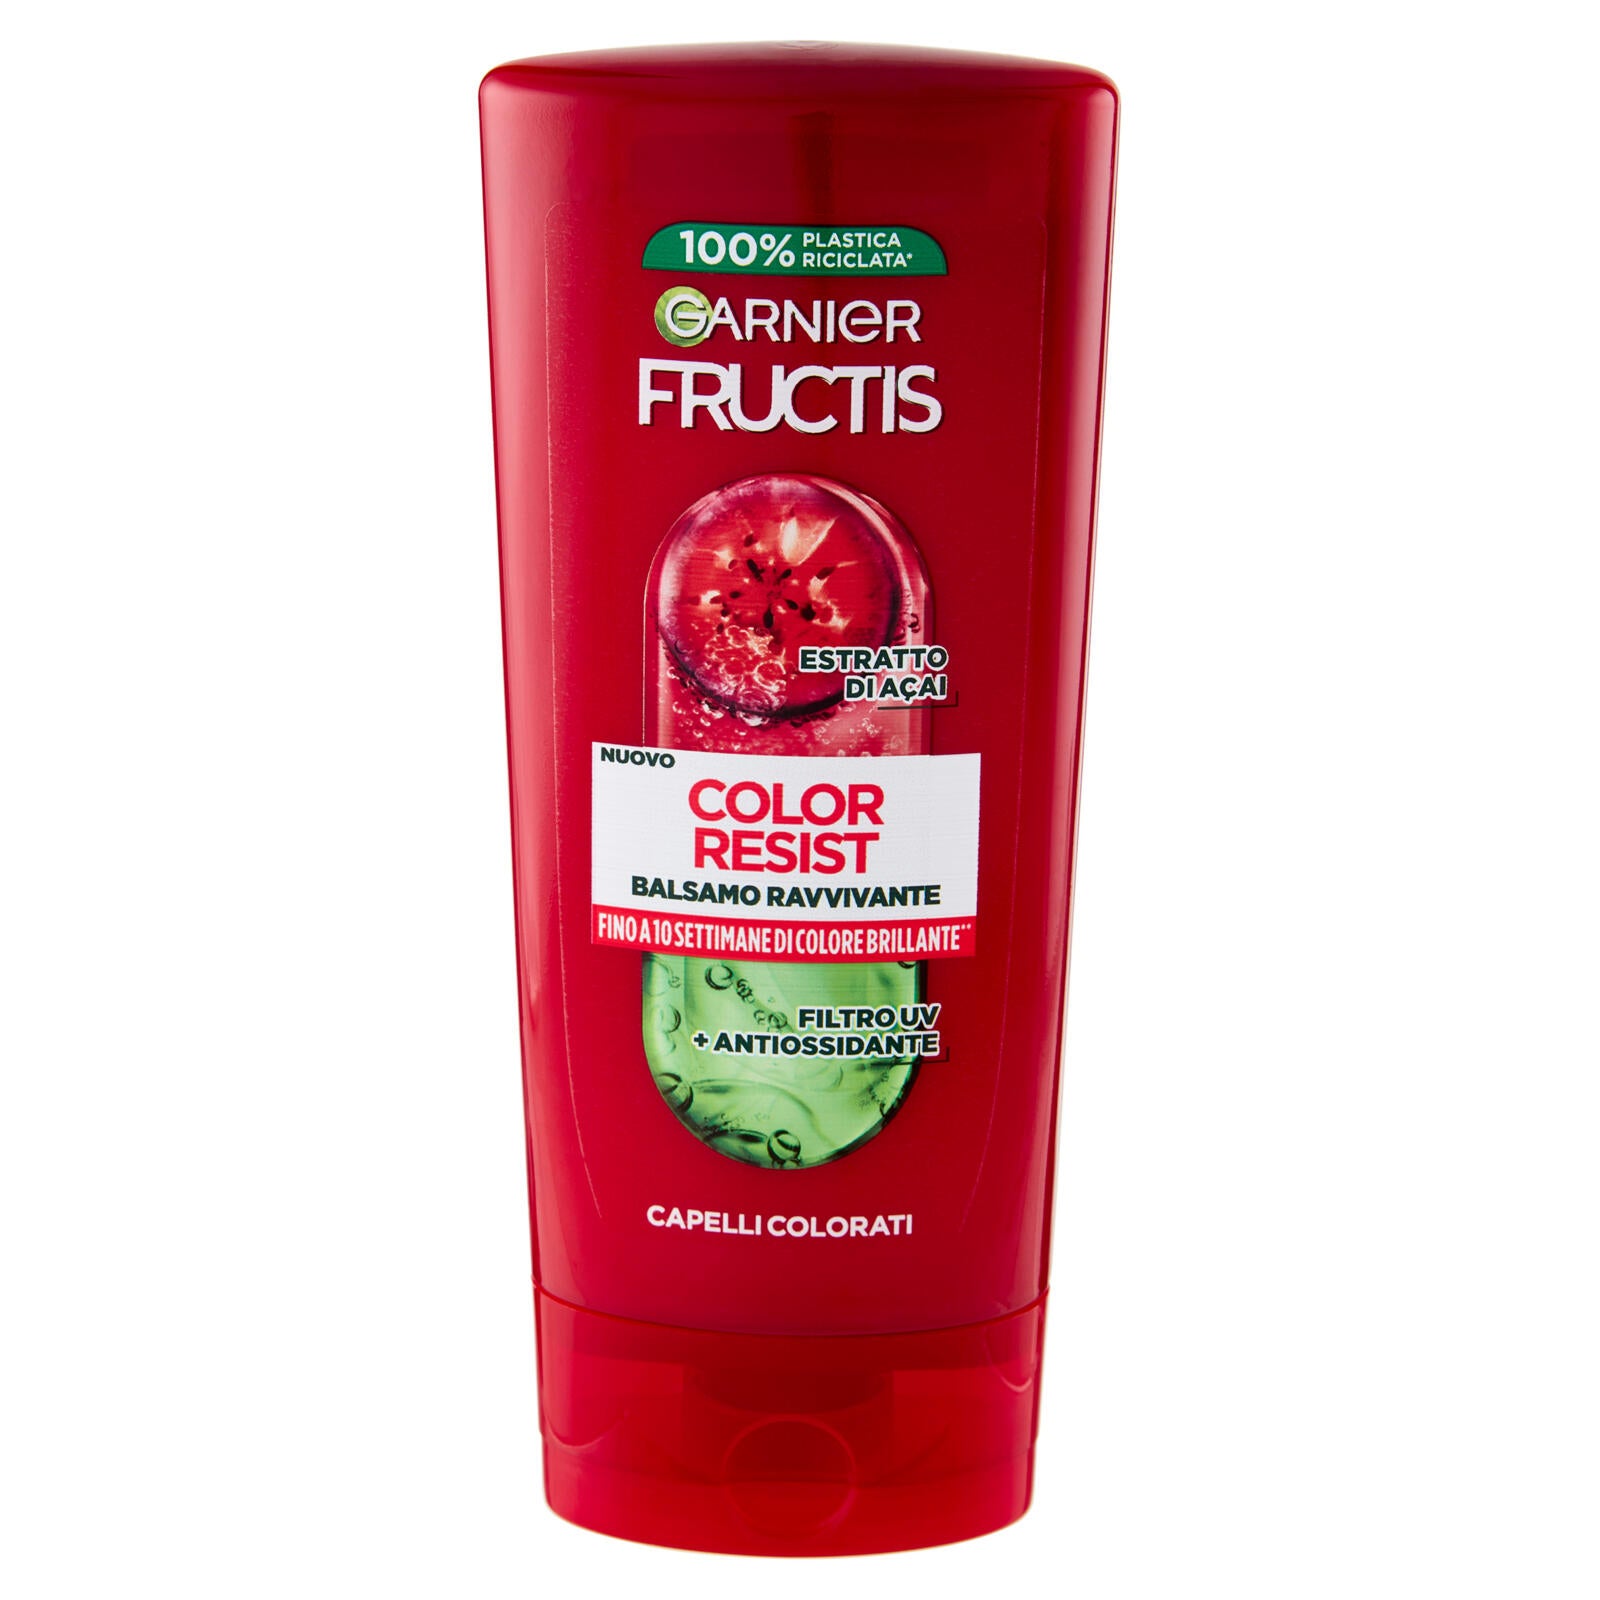 Garnier Fructis Balsamo Color Resist, balsamo ravvivante per capelli colorati, 200 ml